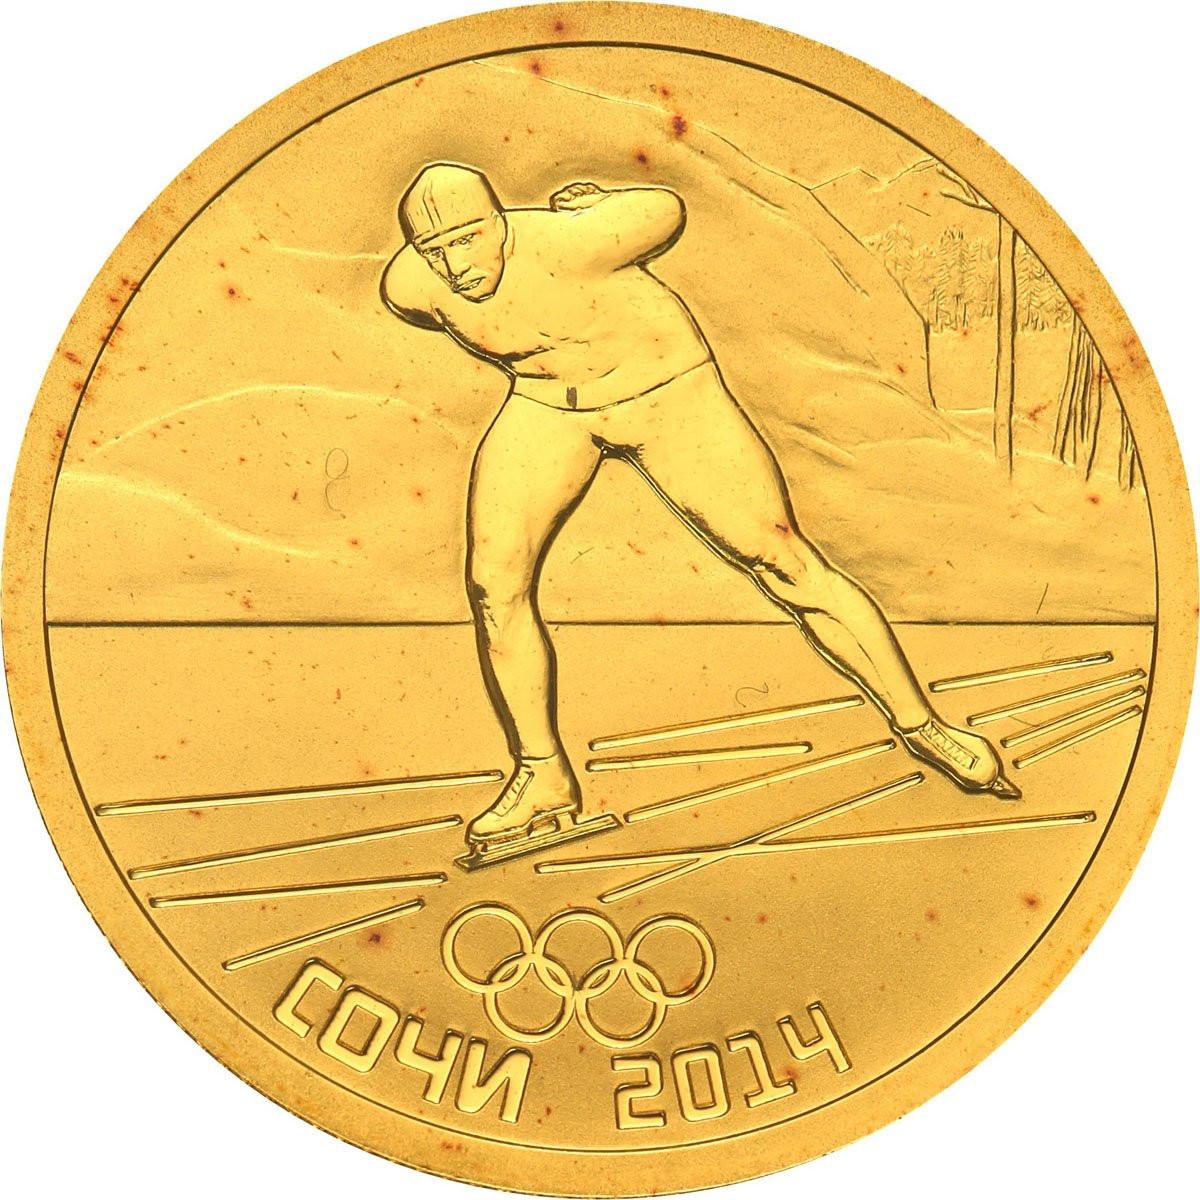 Rosja. 50 Rubli 2014 Olimpiada Soczi - Łyżwiarz - 1/4 uncji złota